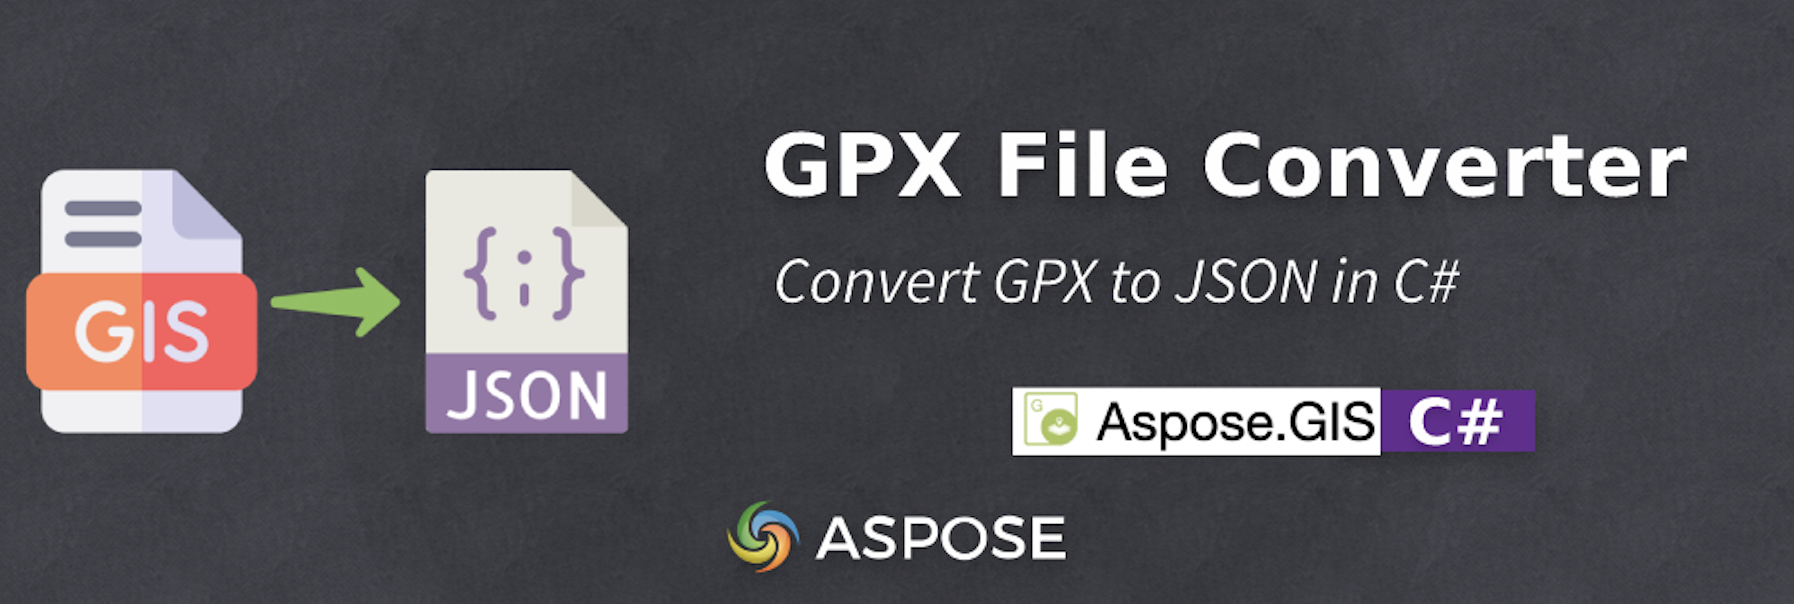 تبدیل GPX به JSON در C# - GPX File Converter